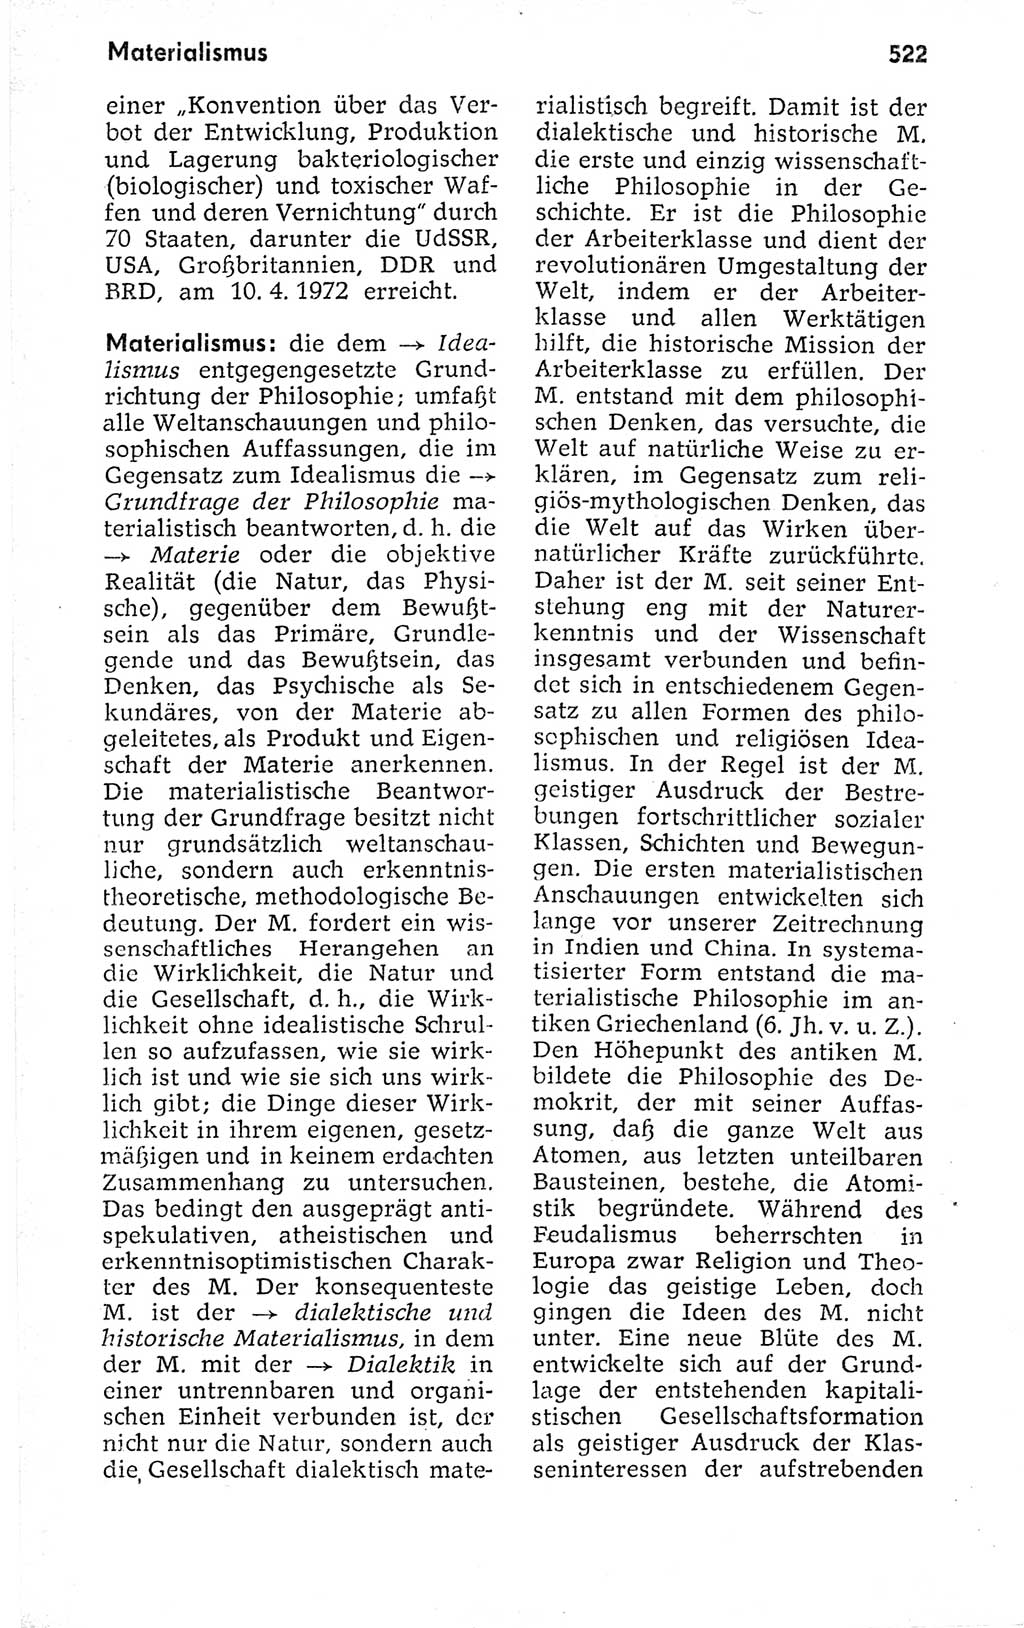 Kleines politisches Wörterbuch [Deutsche Demokratische Republik (DDR)] 1973, Seite 522 (Kl. pol. Wb. DDR 1973, S. 522)